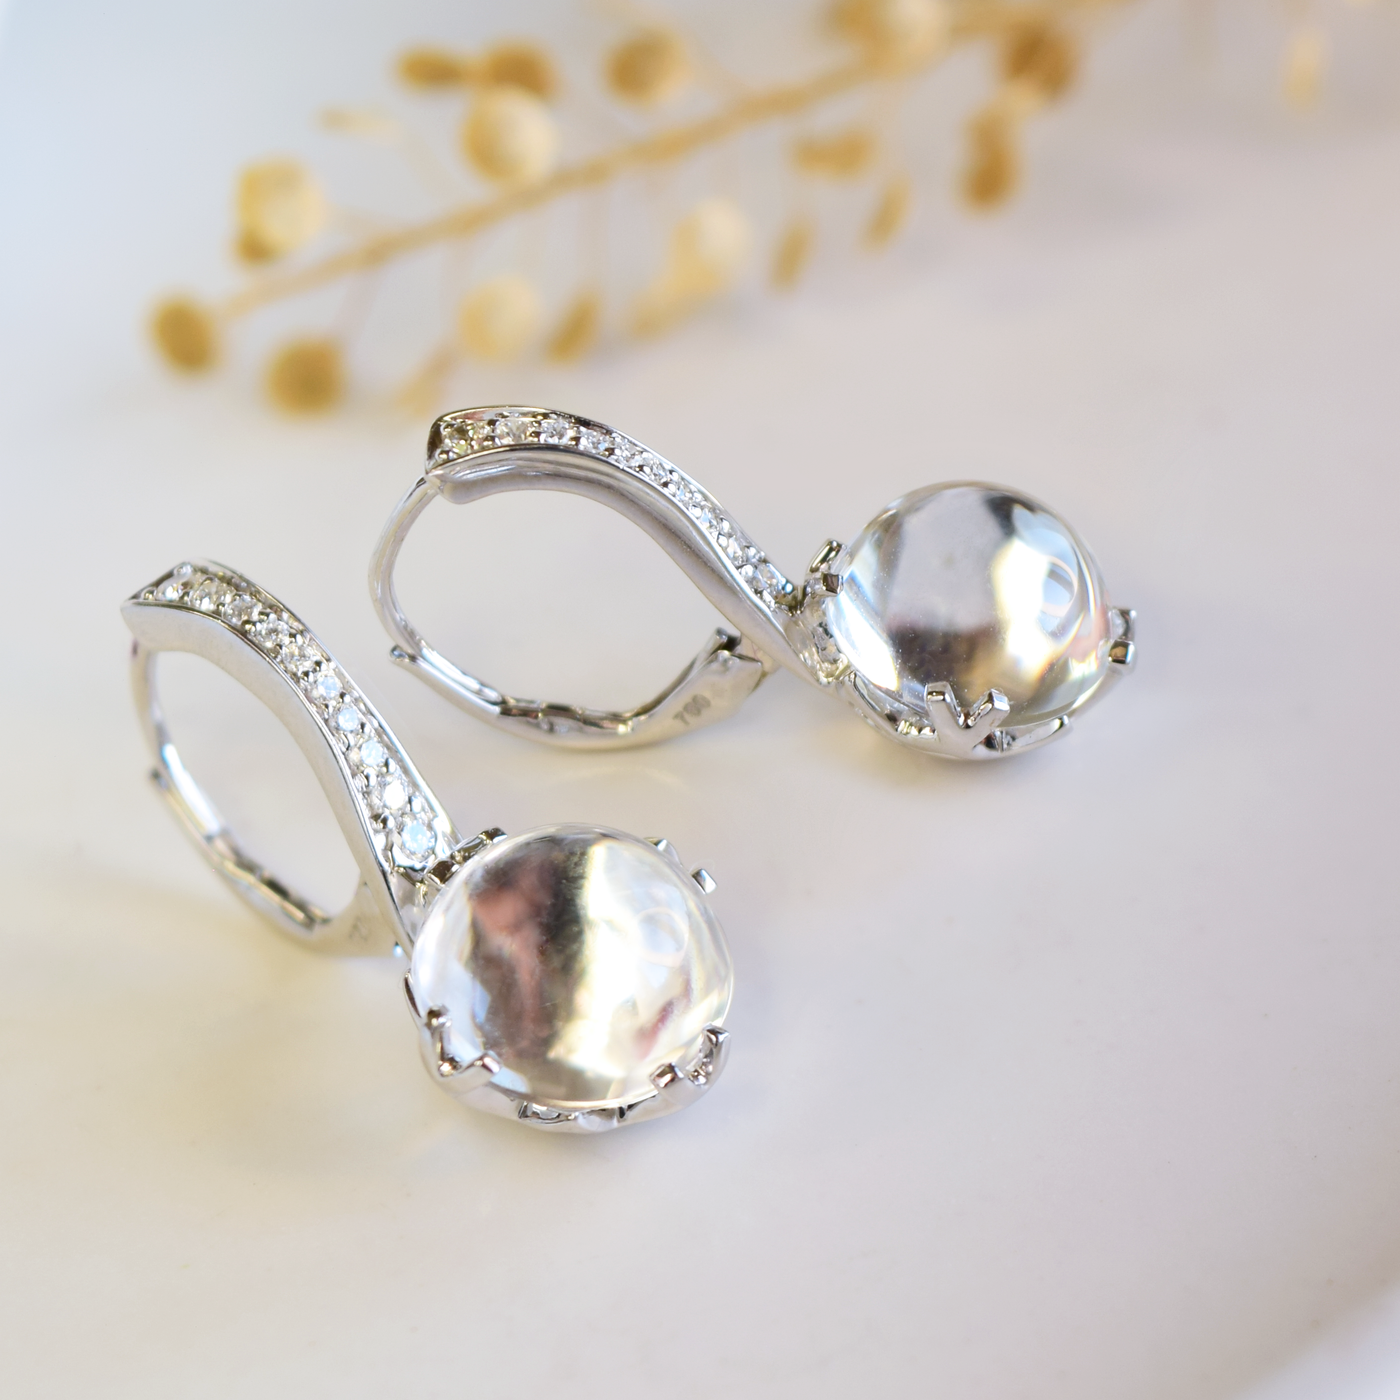 White Topaz Diamond Jelly Bean Earrings